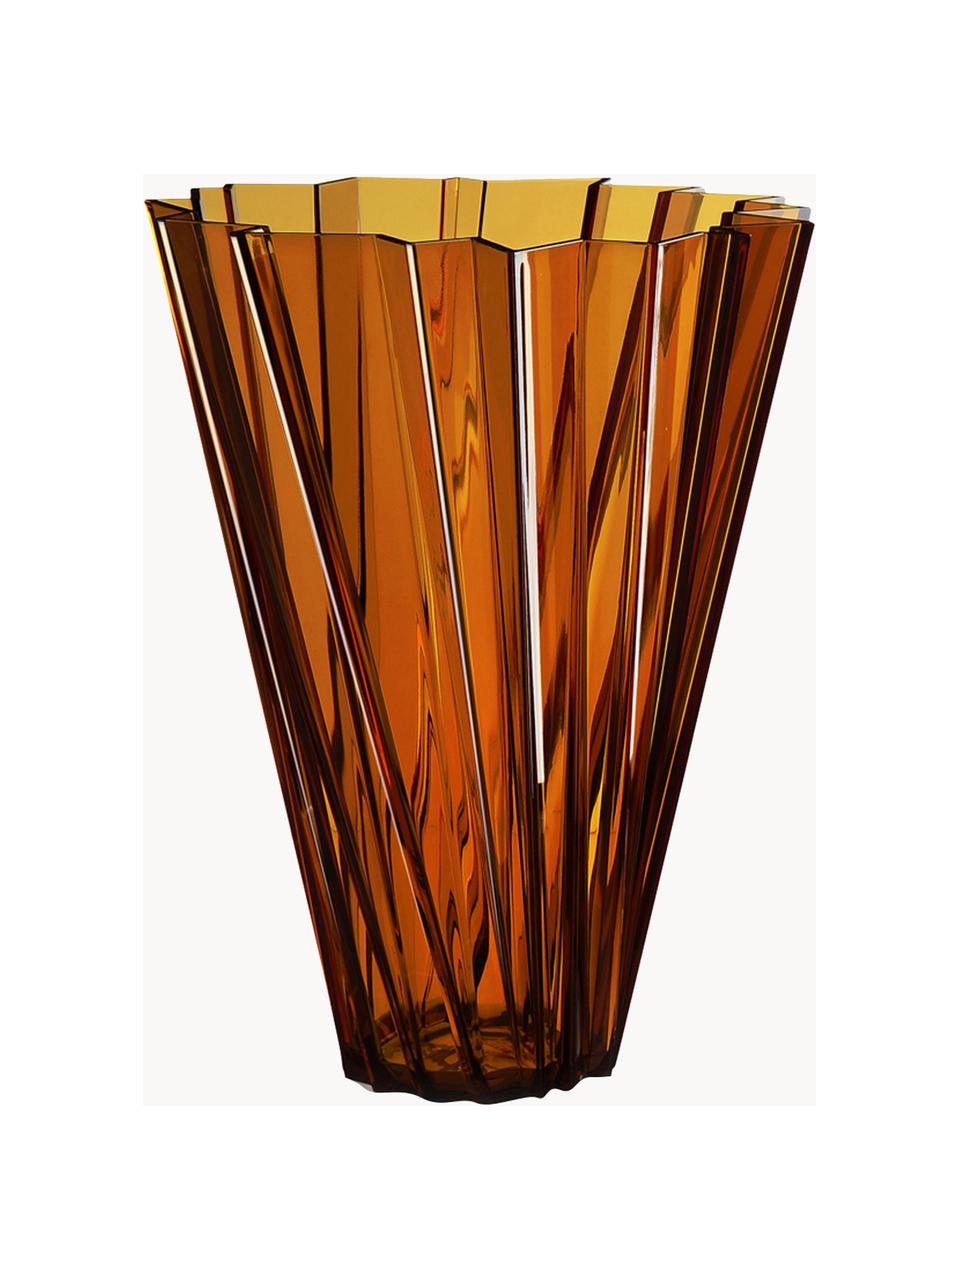 Velká váza Shanghai, V 44 cm, Akrylátové sklo, Oranžová, transparentní, Ø 35 cm, V 44 cm